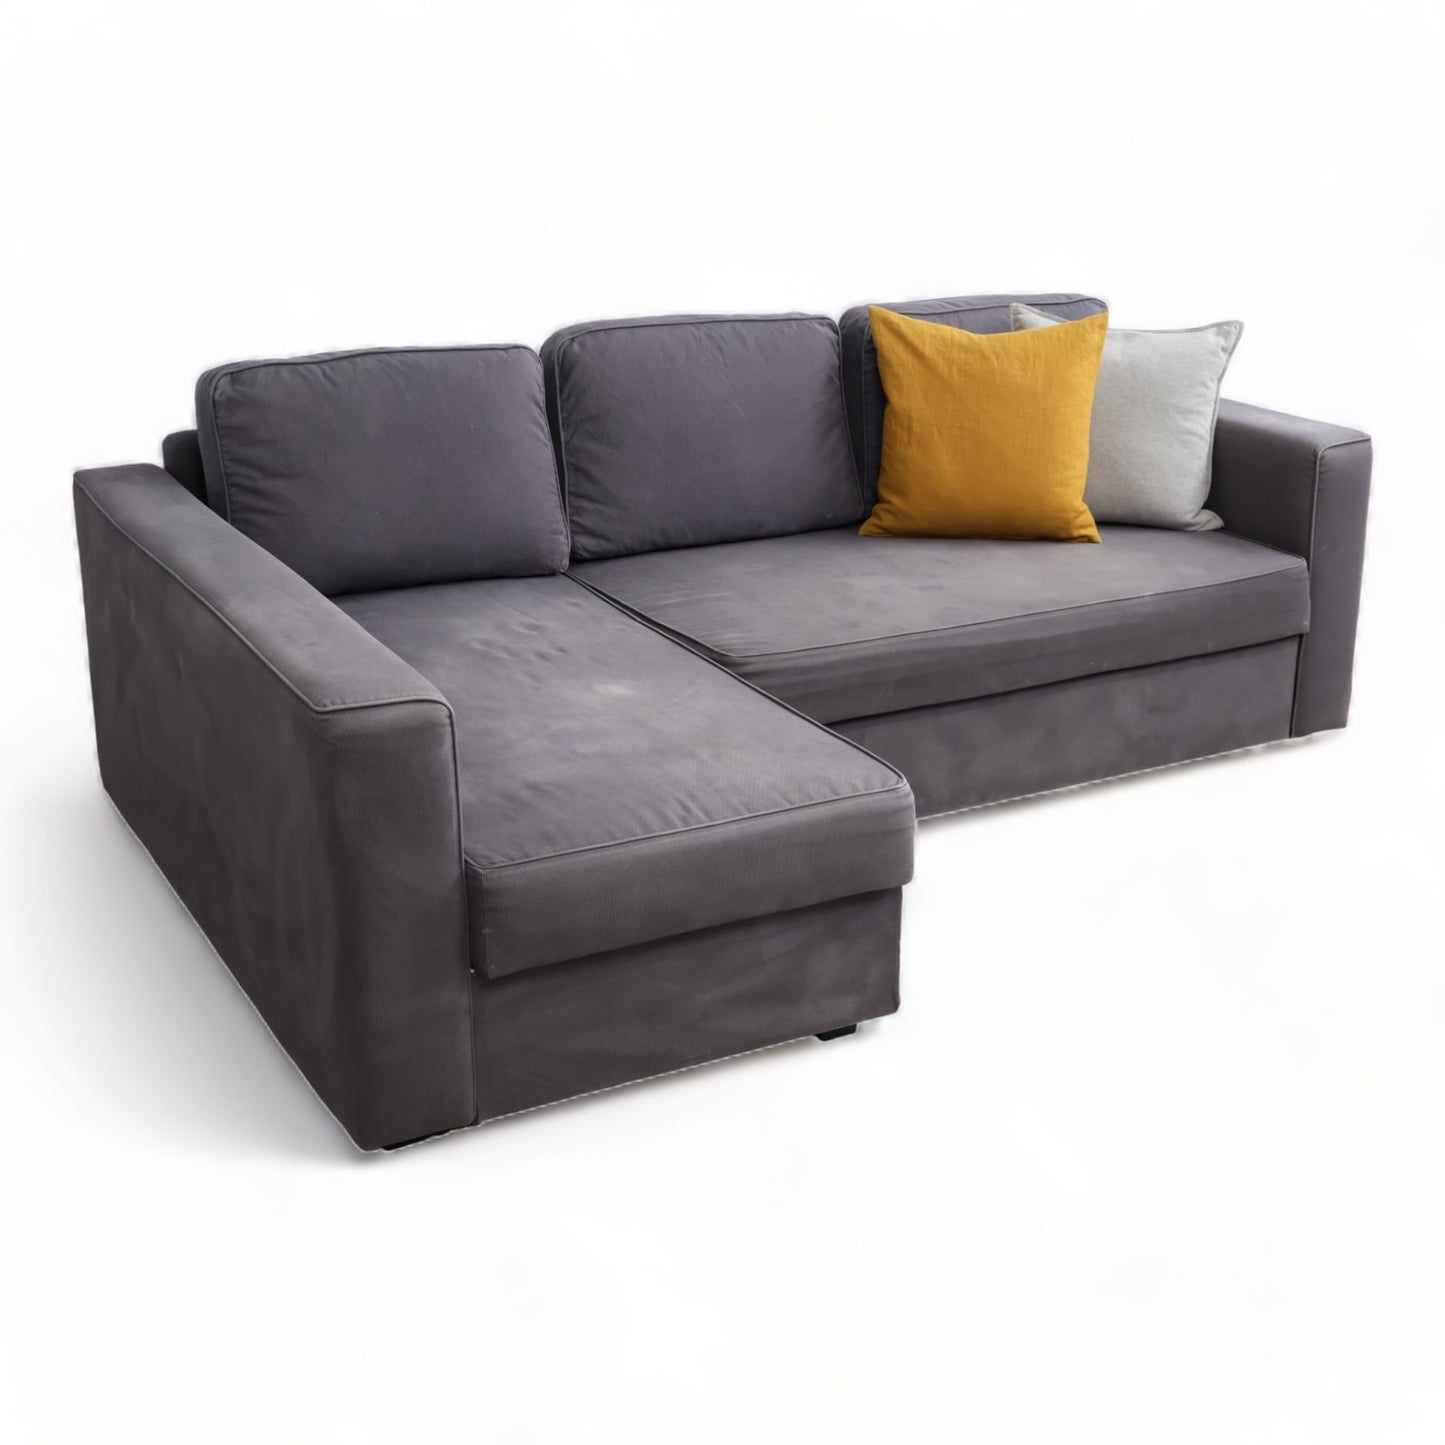 Nyrenset | Mørk grå IKEA sovesofa